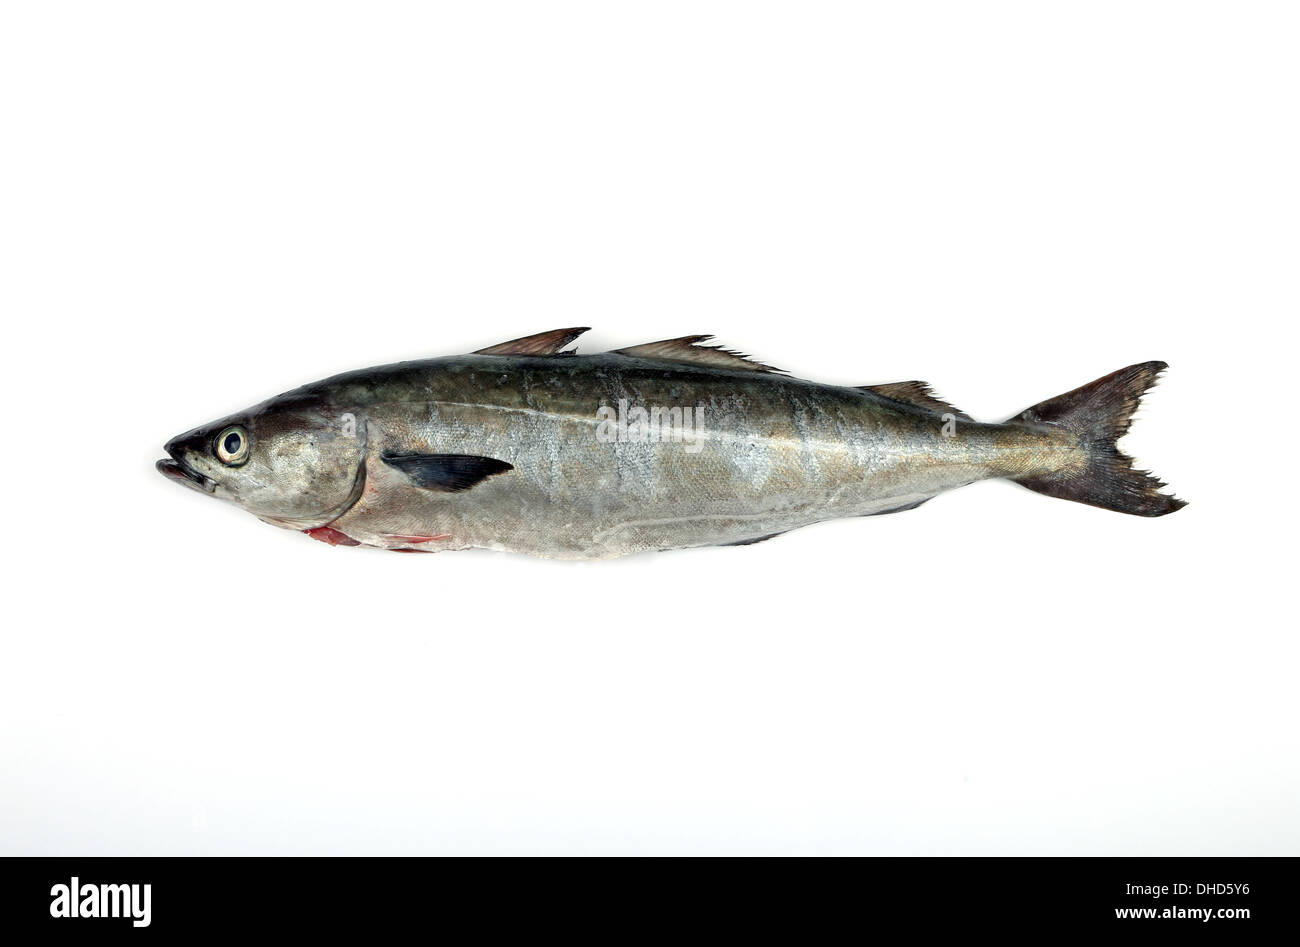 A Saithe fish, also known as coalfish, coley, pollock, shot on white background Stock Photo